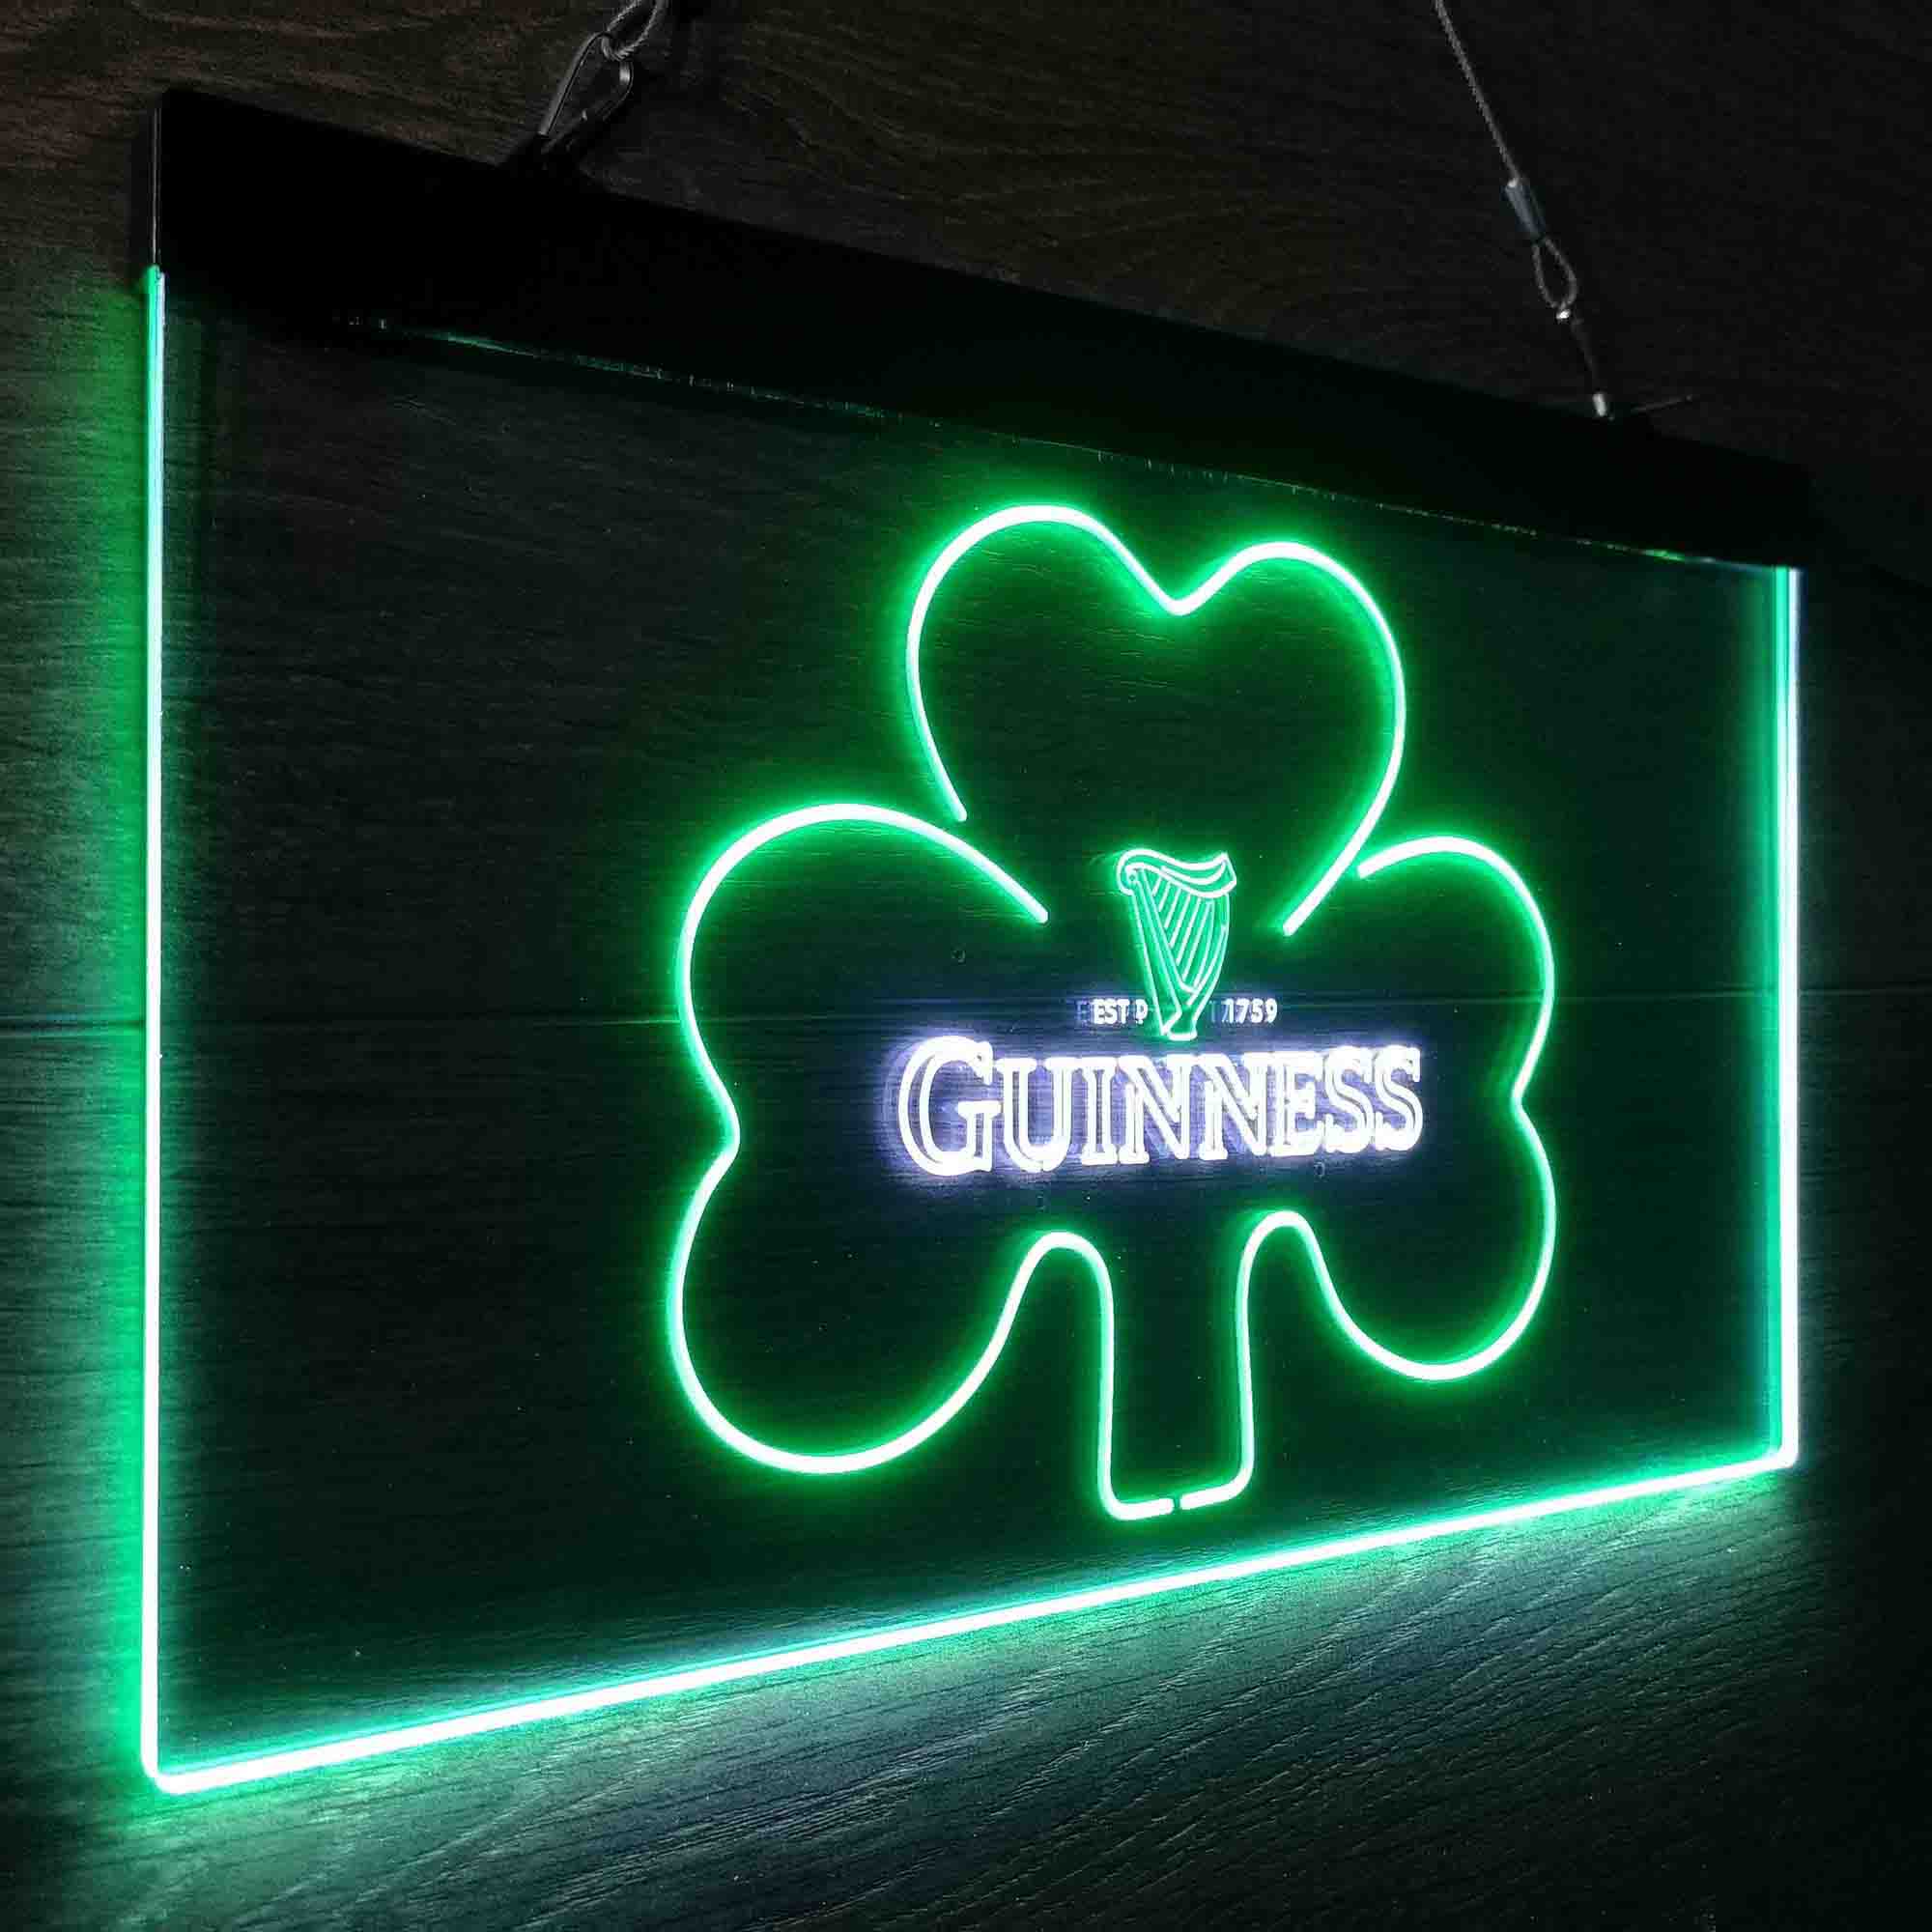 Guinness Shamrock Ale Neon-Like LED Sign